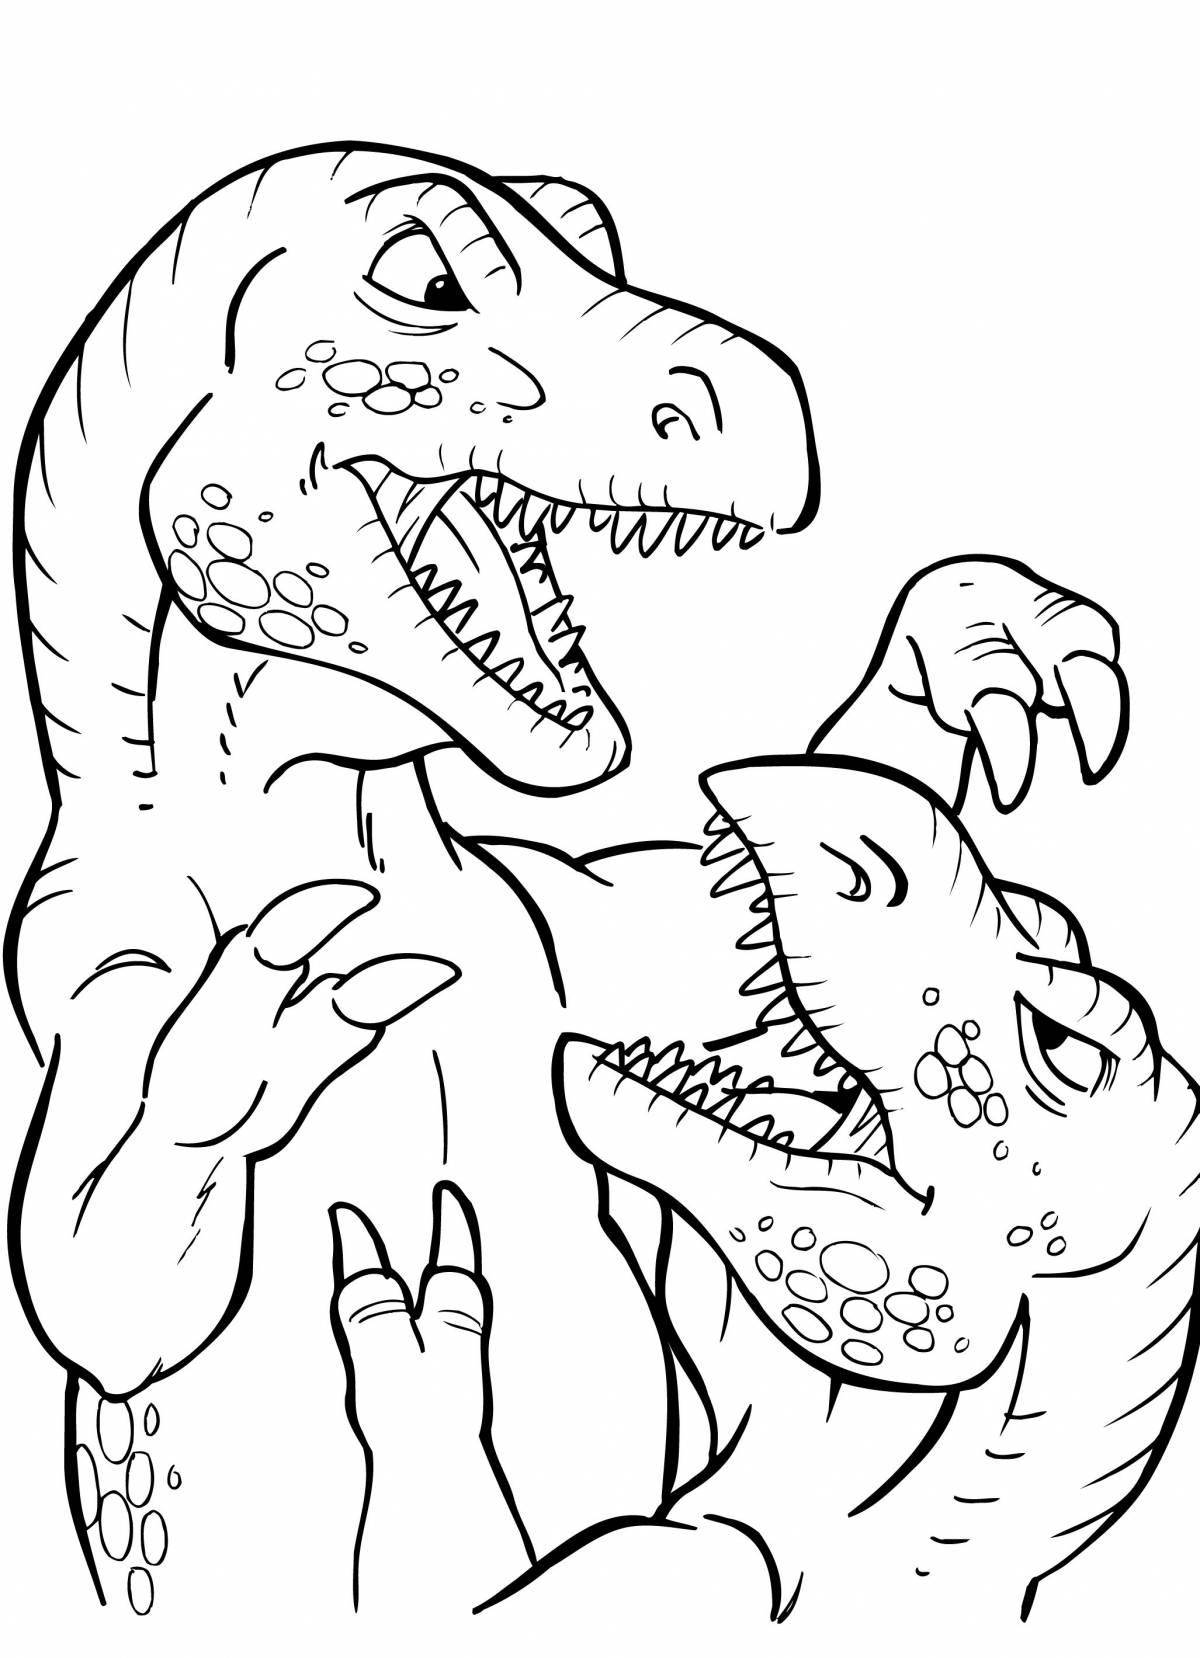 Tarbosaurus coloring book for kids